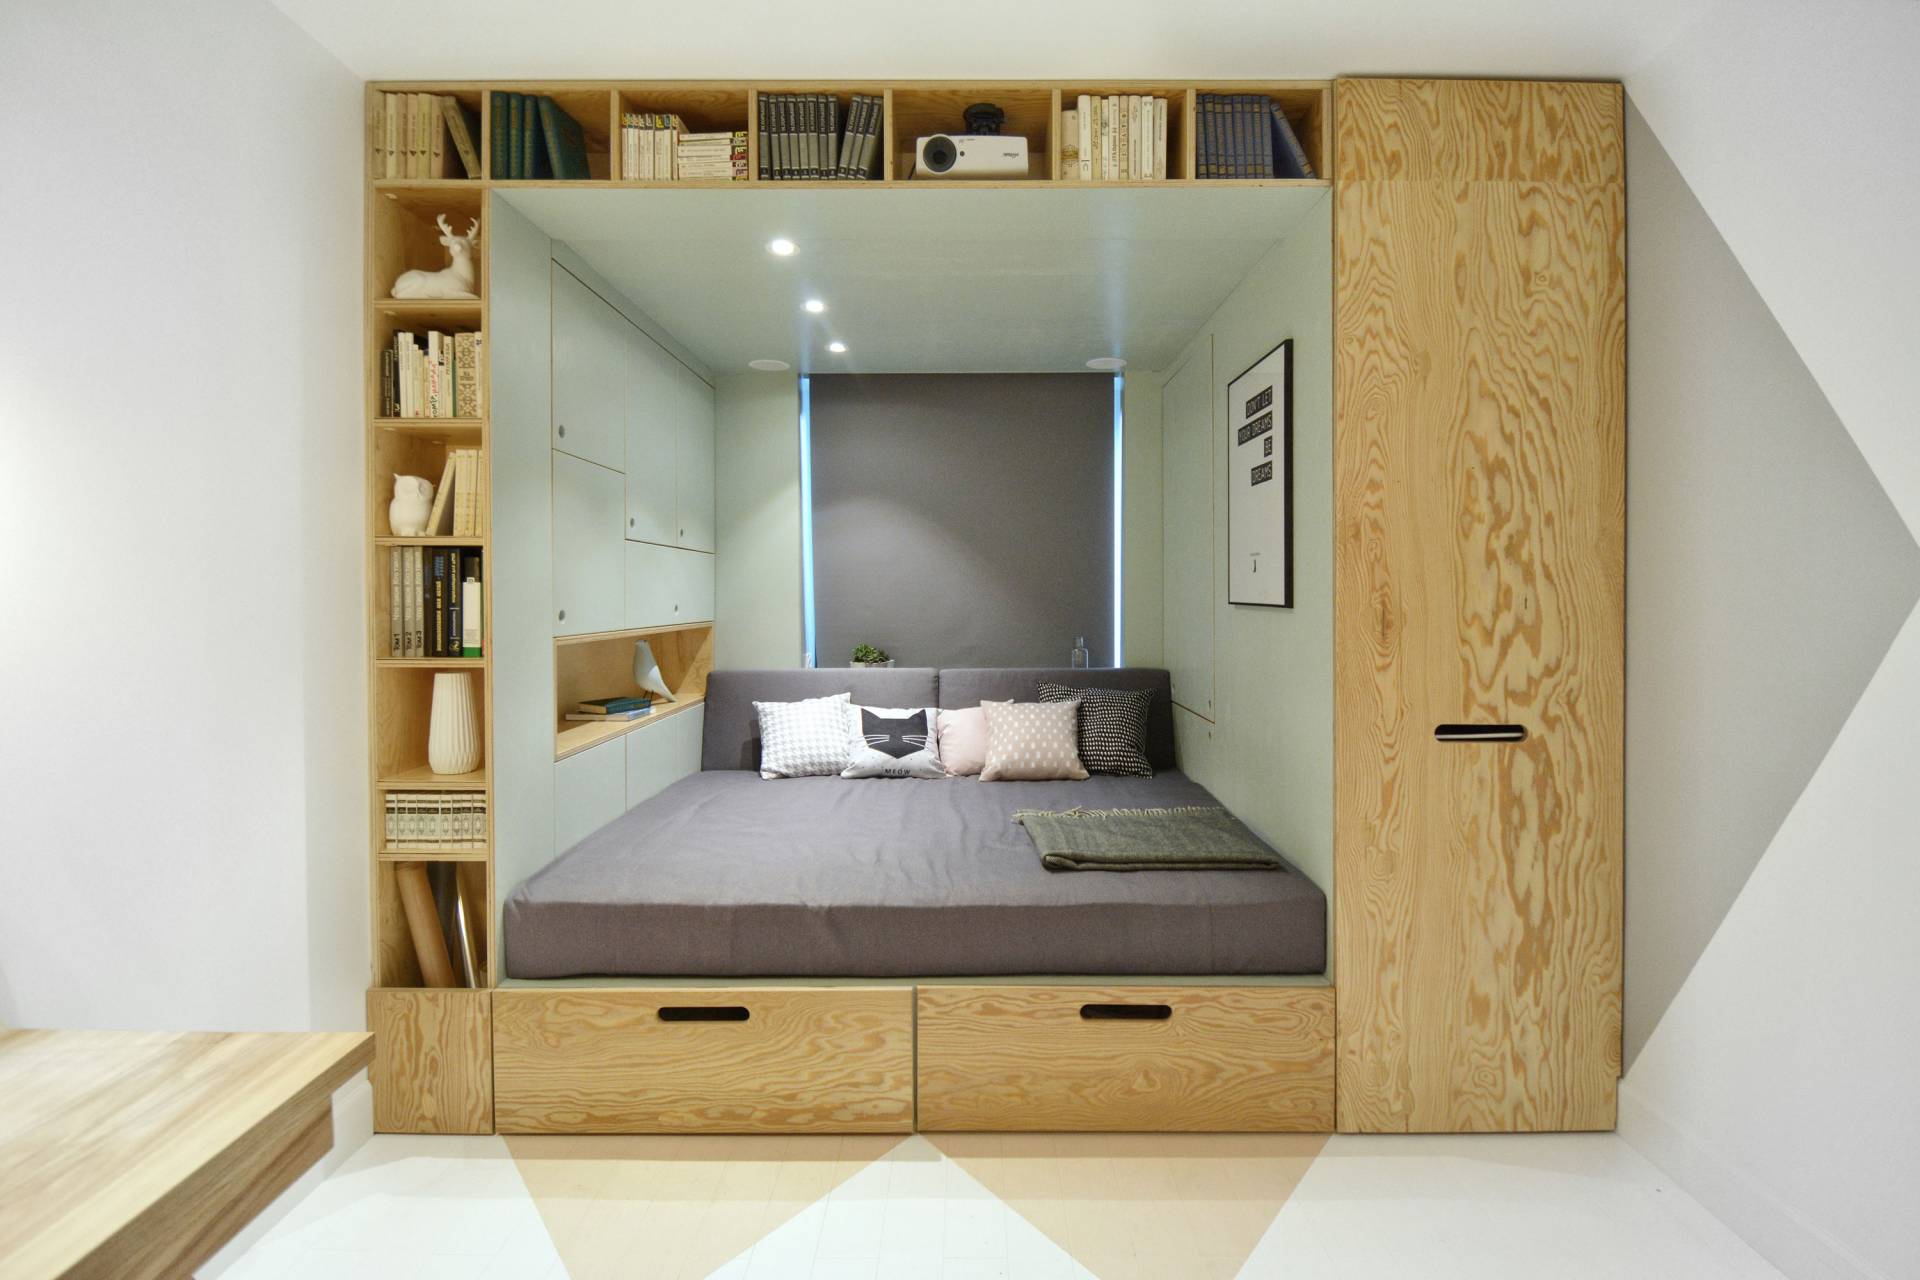 Chia phòng ngủ không cần tường ngăn trong năm 2024 sẽ giúp bạn tận dụng không gian một cách hiệu quả. Vách ngăn phòng ngủ được thiết kế sao cho không gian vẫn thoáng và rộng rãi. Bạn có thể tận dụng vách ngăn để phân chia các khu vực khác nhau trong phòng, nhưng vẫn tạo ra một không gian ngủ đầy đủ tiện ích.